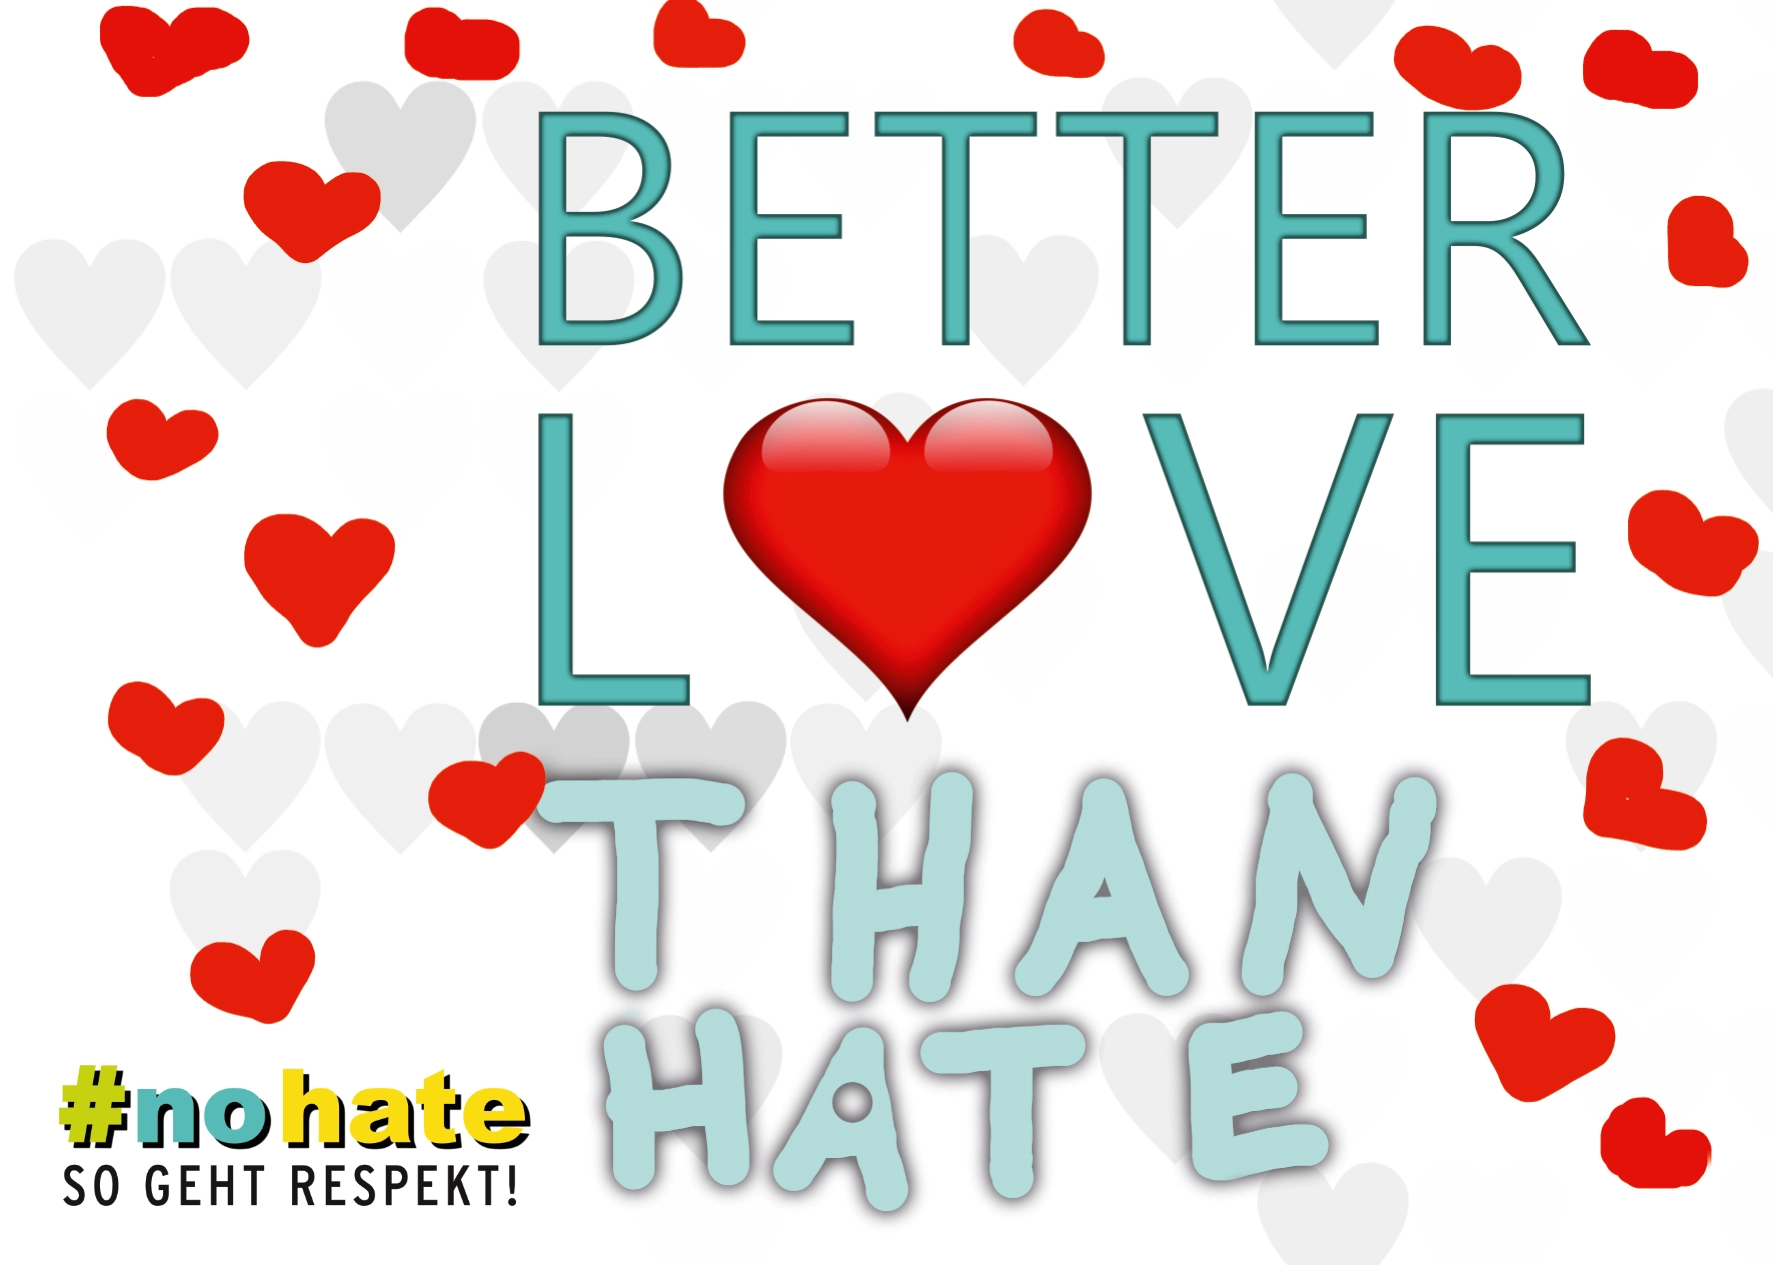 Postkarten- und Stickermotiv "Better love than hate"